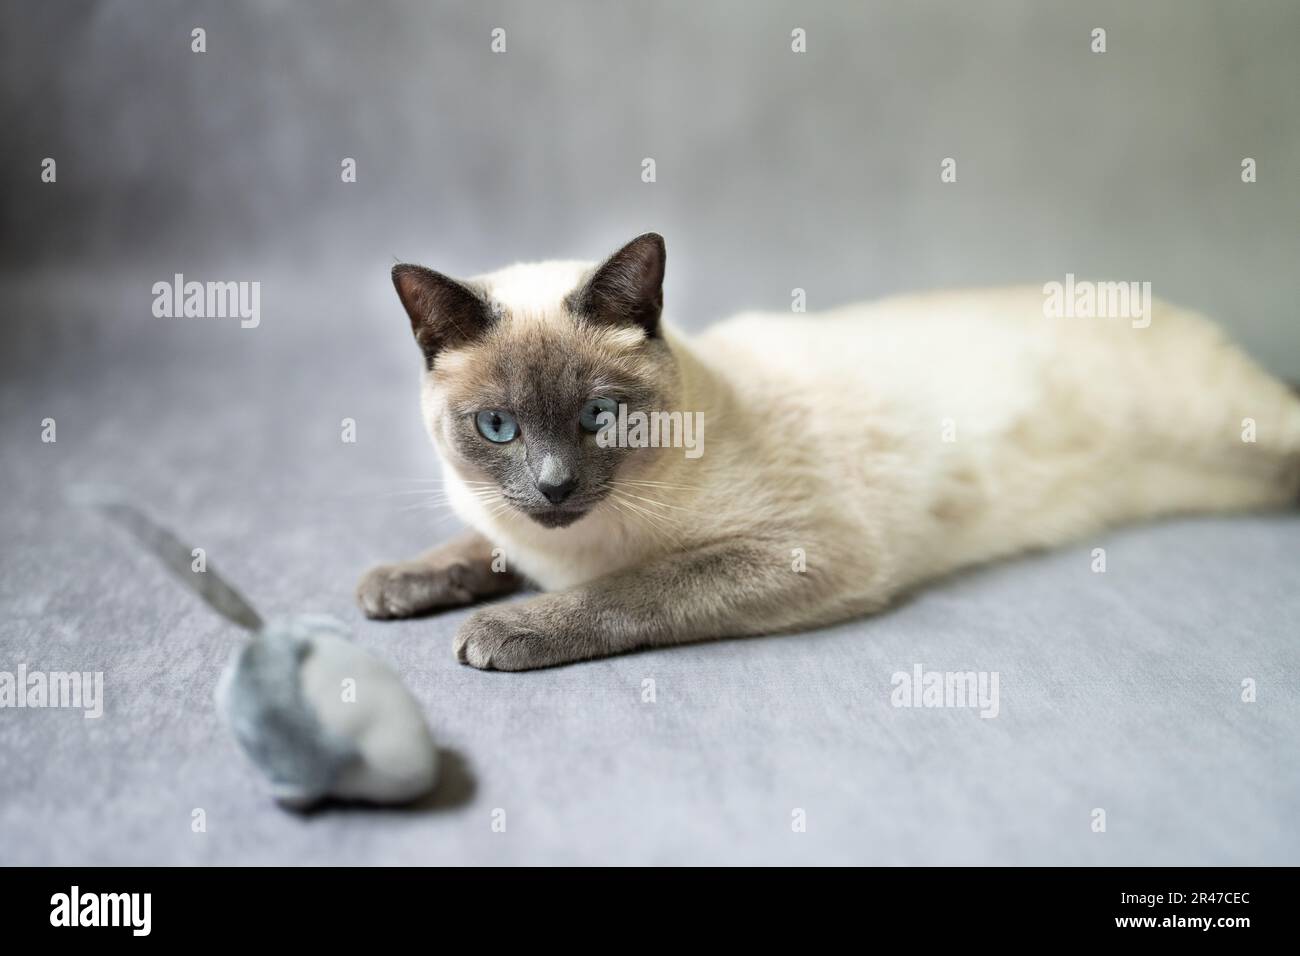 Thai Cat Blue Point spielt mit einer Maus, alte siamesische Art, blau und grau, eisfarben weiß mit blauem Schimmer. Siamesische Katze Kätzchen weiß pelzig groß B Stockfoto